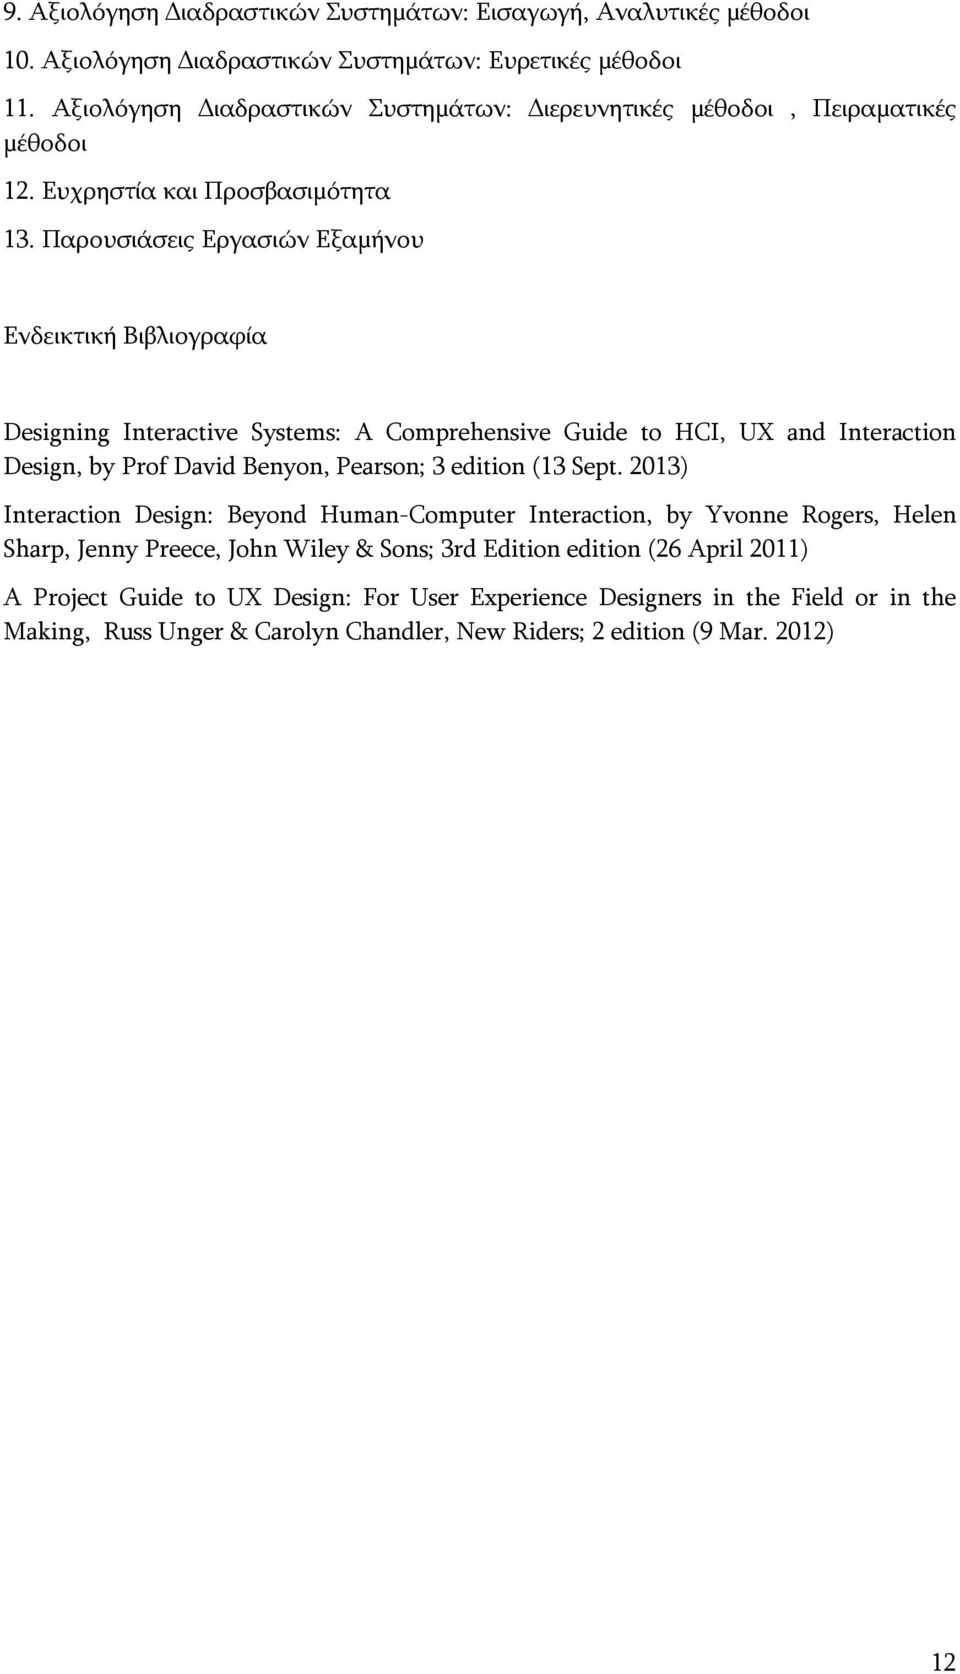 Παρουσιάσεις Εργασιών Εξαμήνου Ενδεικτική Βιβλιογραφία Designing Interactive Systems: A Comprehensive Guide to HCI, UX and Interaction Design, by Prof David Benyon, Pearson; 3 edition (13